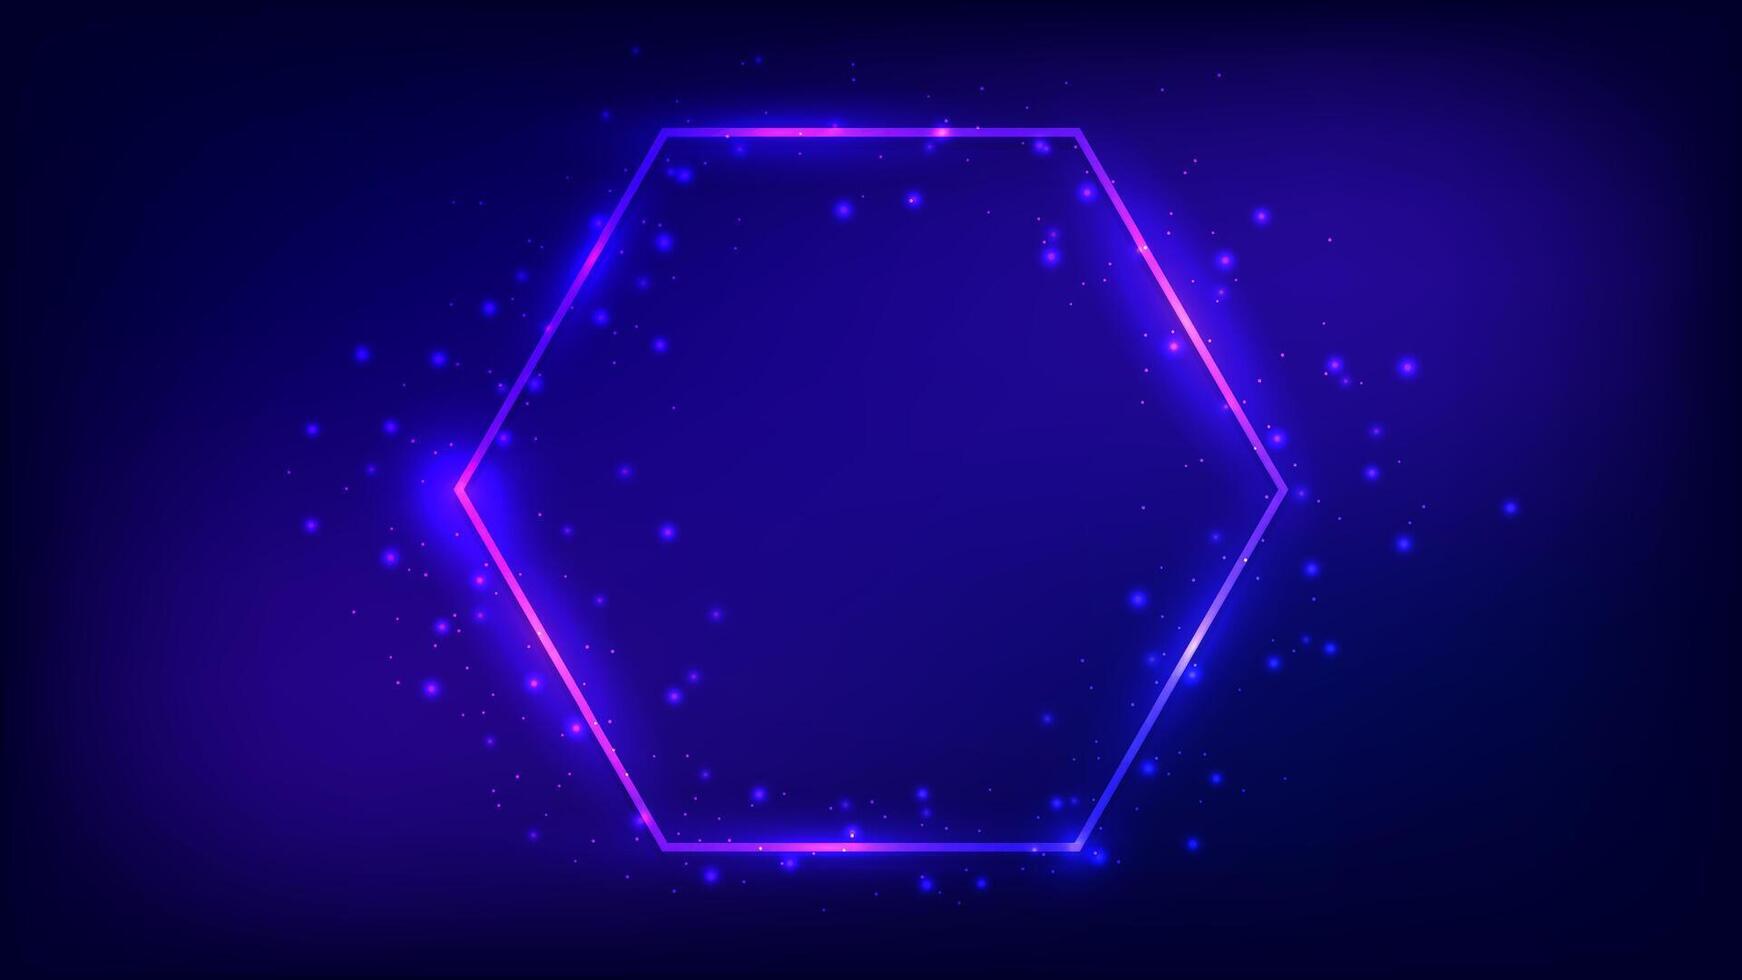 Neon- Hexagon Rahmen mit leuchtenden Auswirkungen vektor